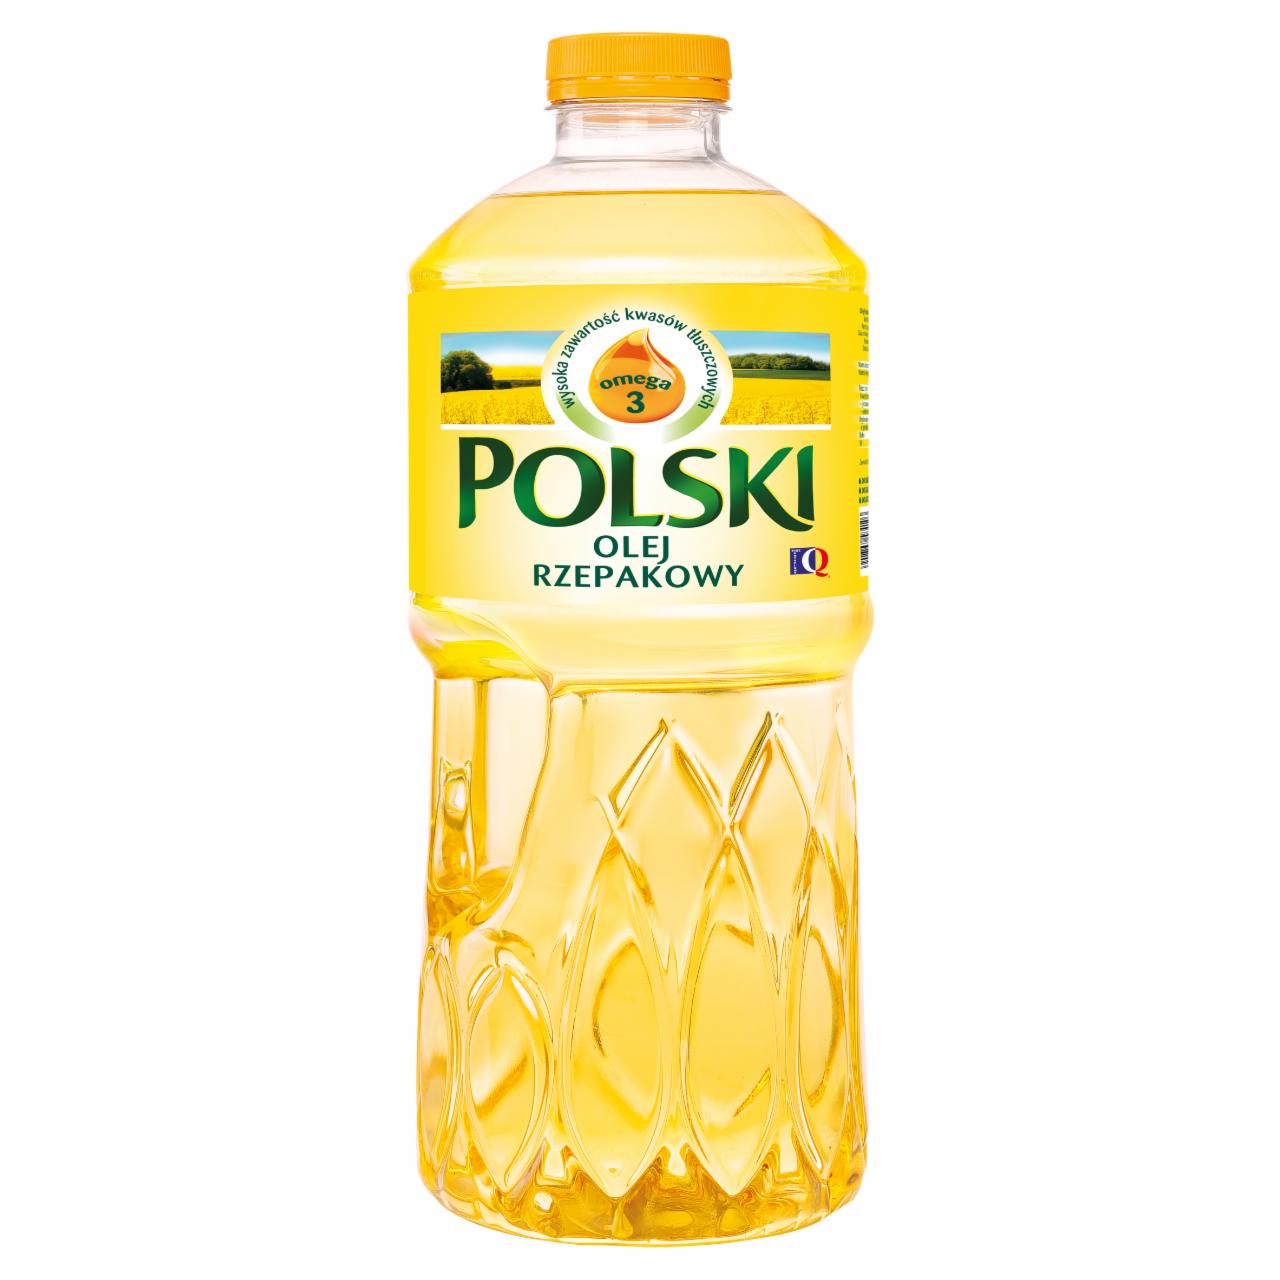 Zdjęcia - Polski olej rzepakowy 3 l